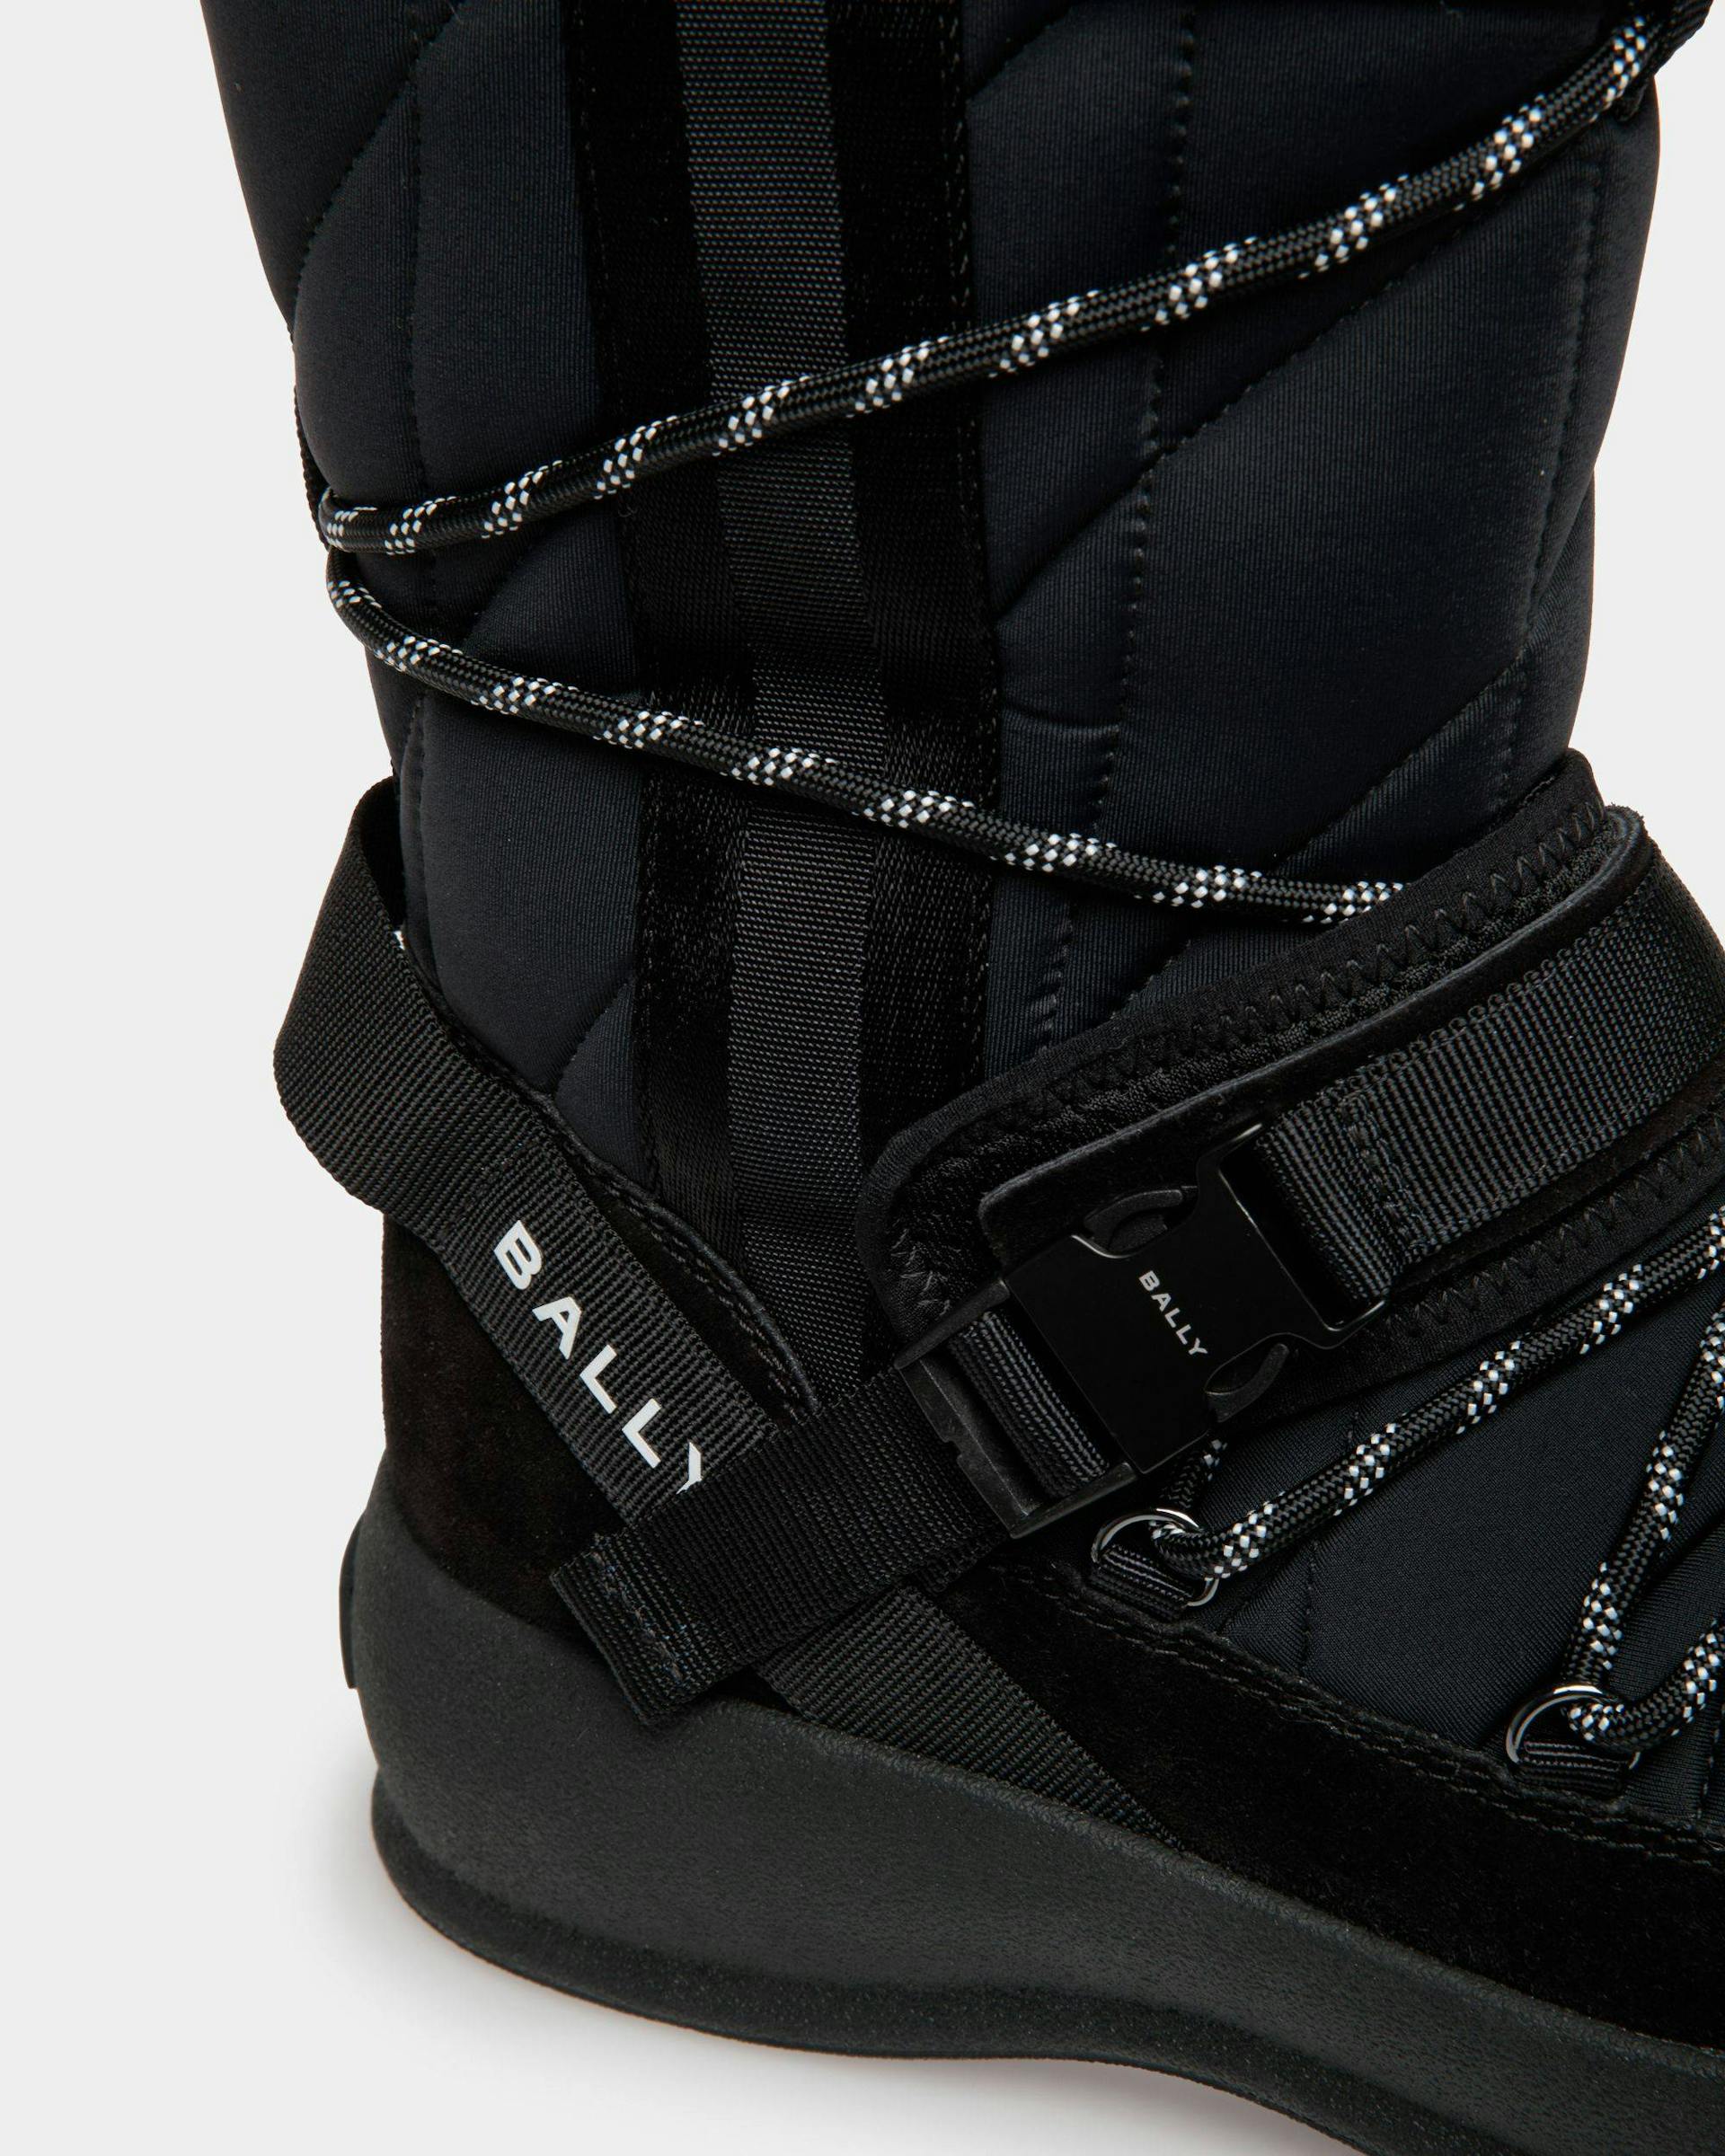 Women's Frei Boot In Black Nylon | Bally | Still Life Detail